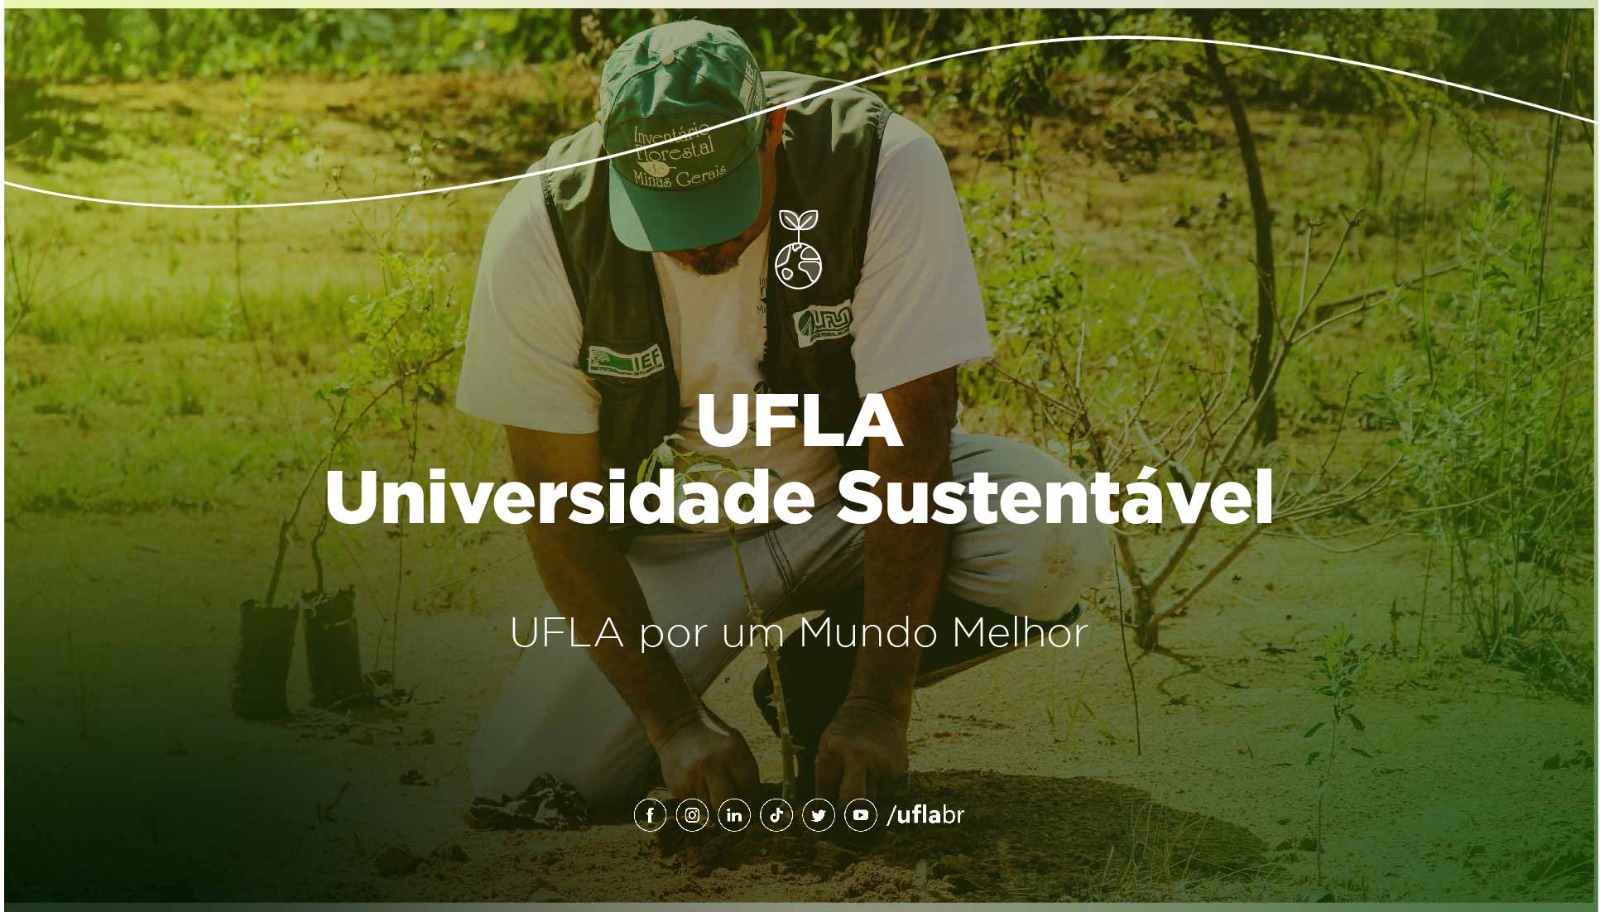 UFLA: Universidade Sustentável - Confira o vídeo preparado para a celebração da Semana do Meio Ambiente